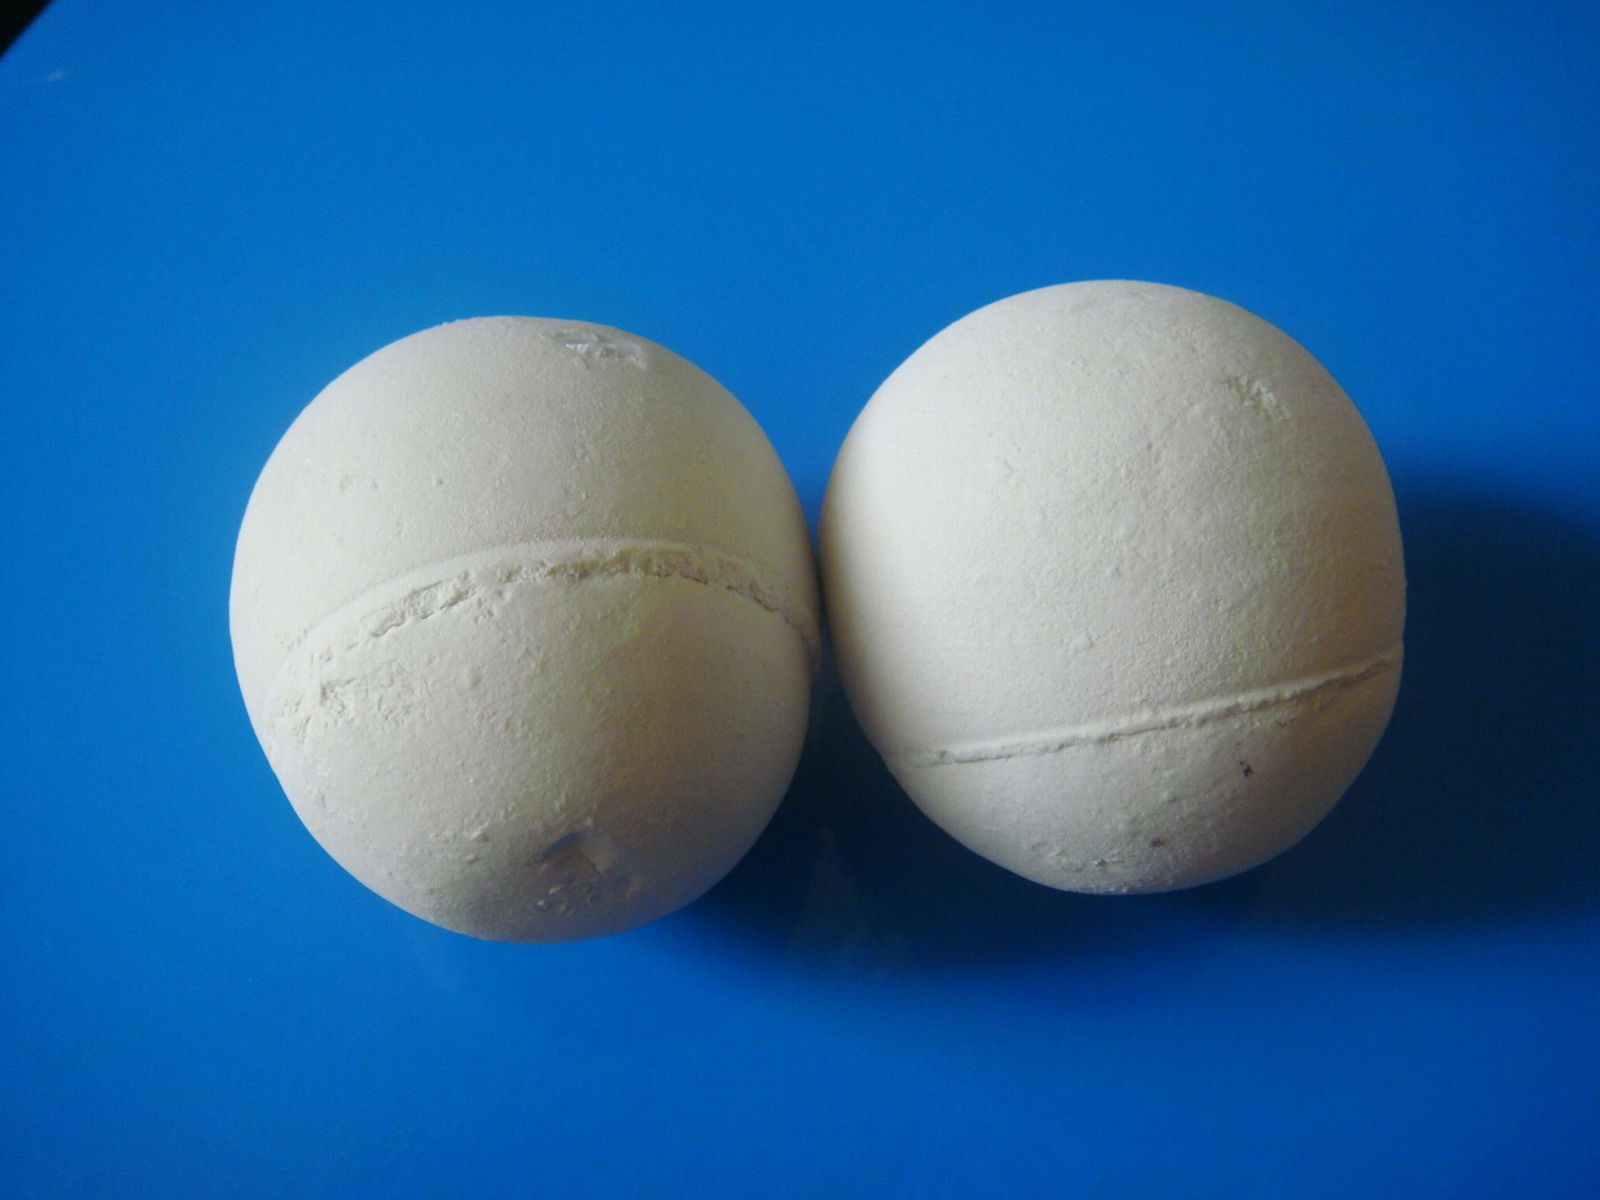  95 white high alumina ceramic grinding balls for ball mill 5